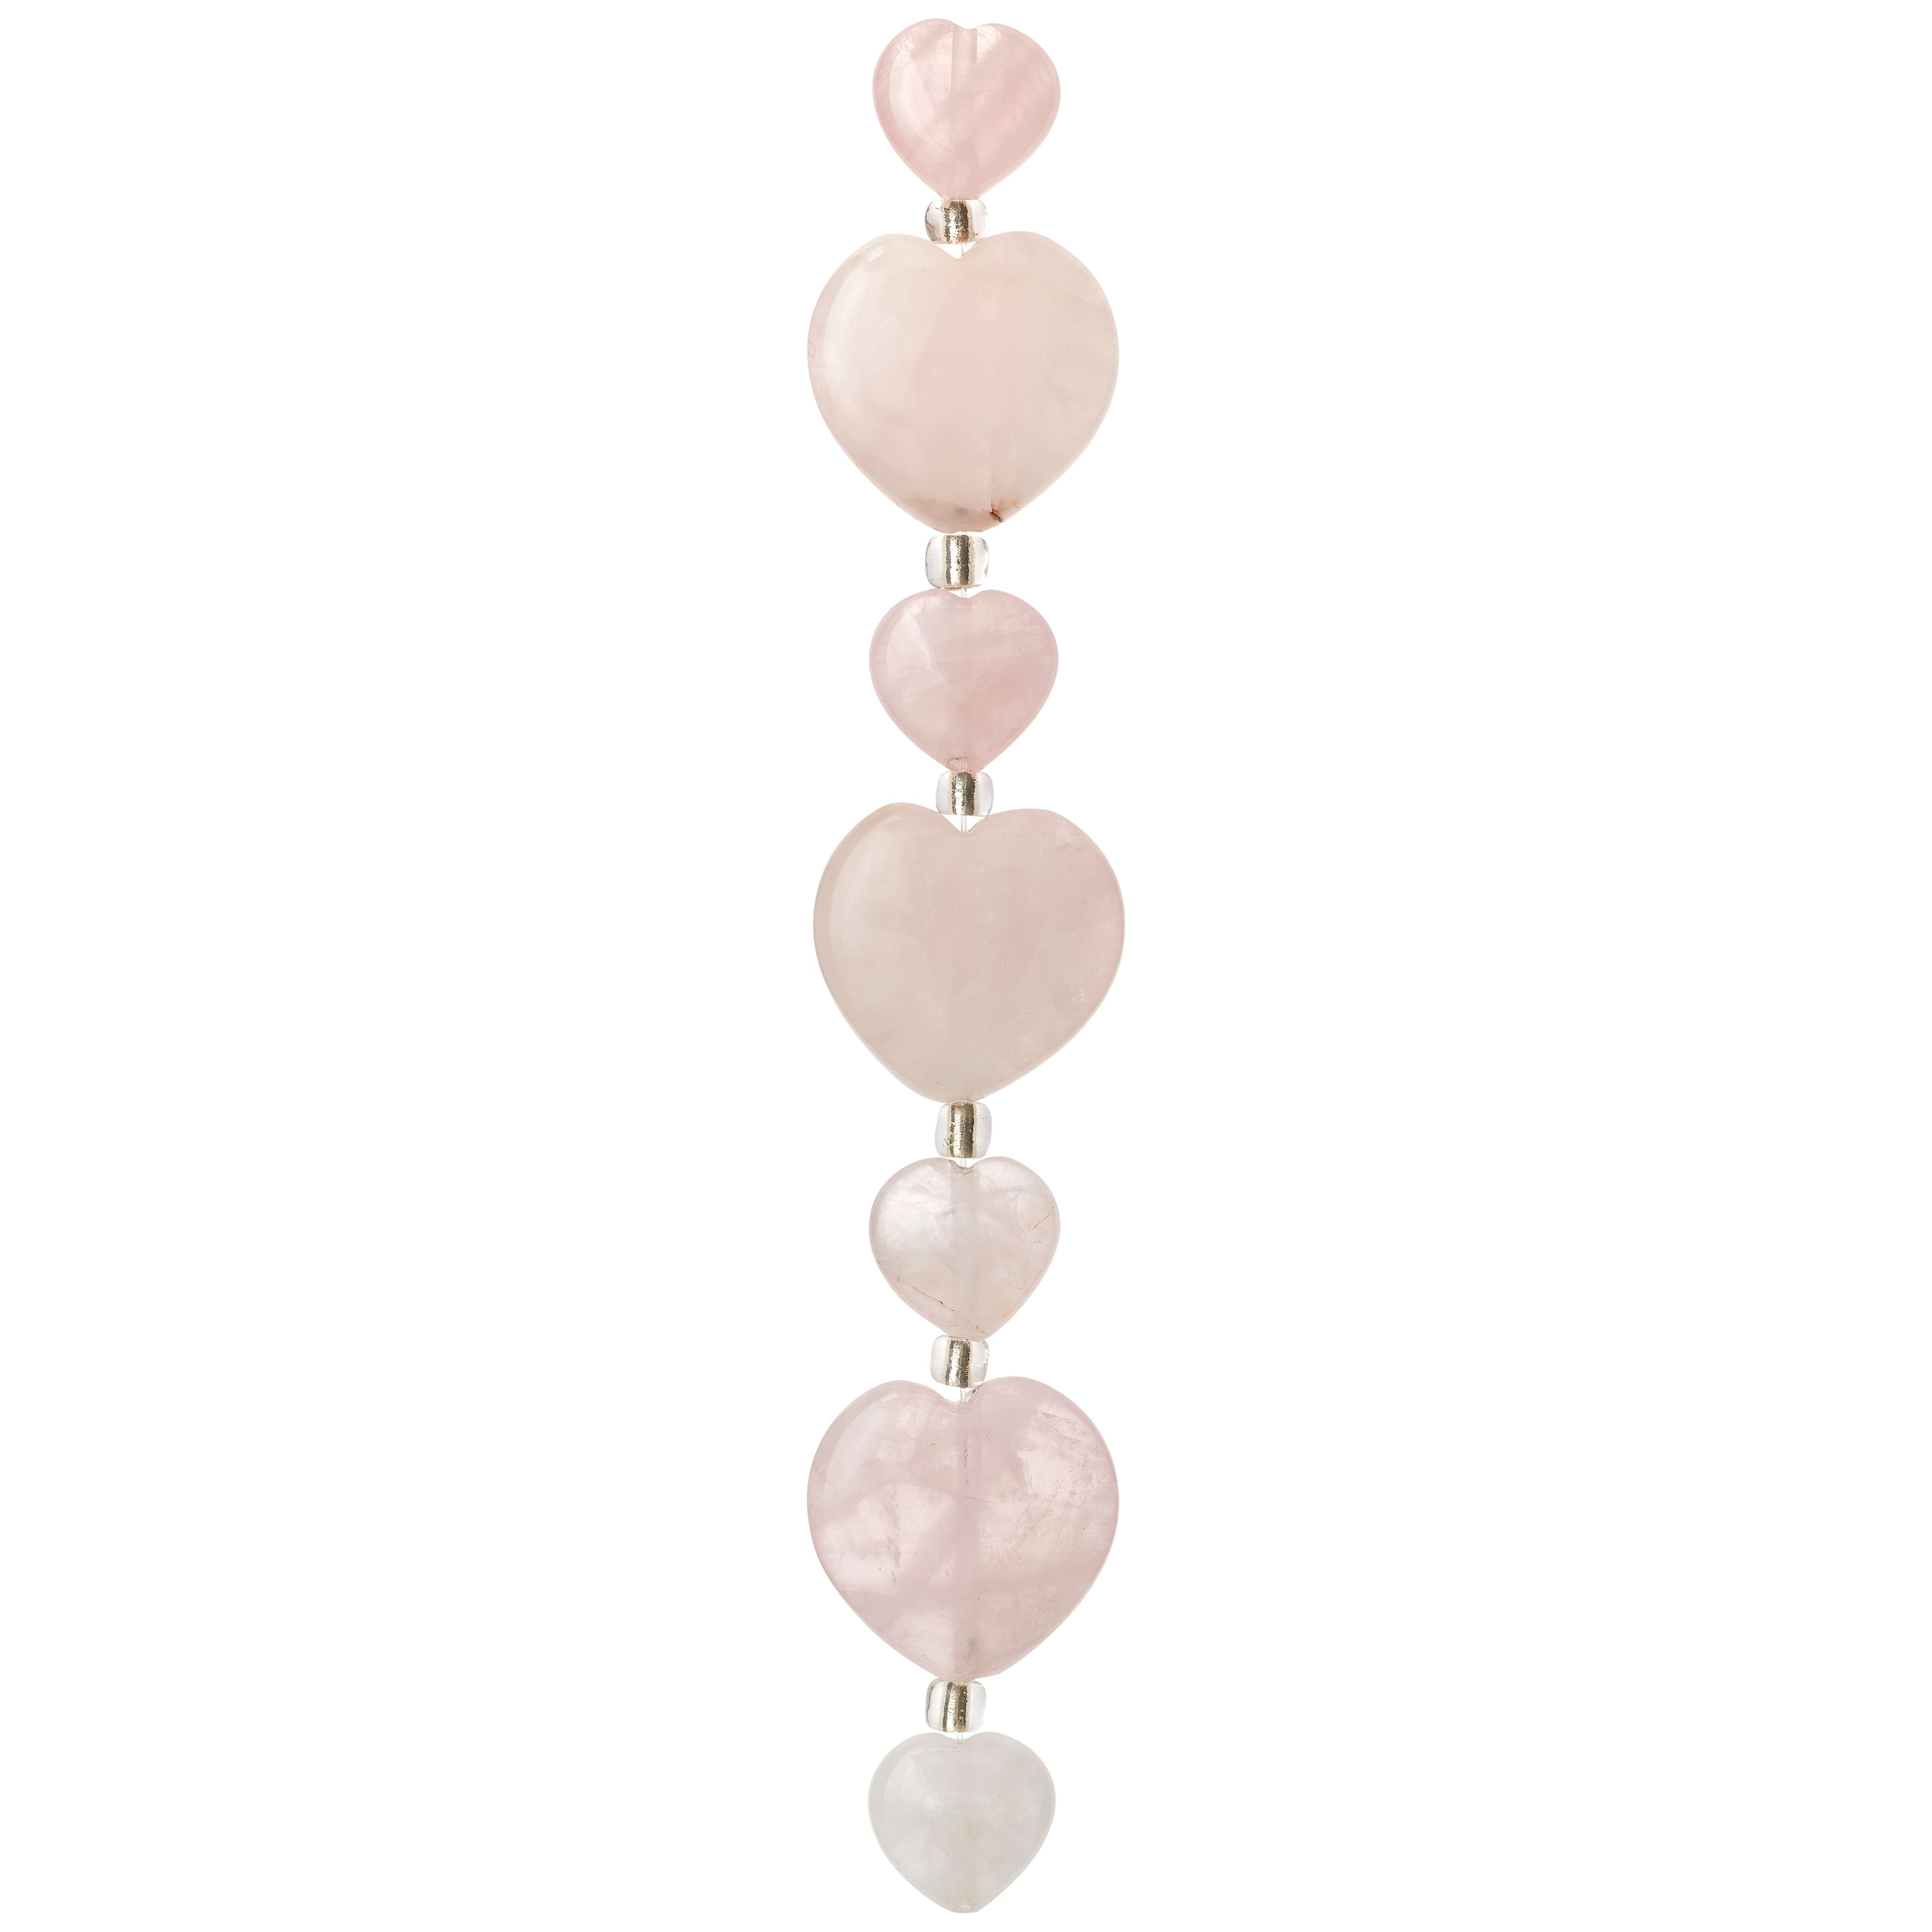 Light Pink Mixed Heart Rose Quartz Beads, 20mm by Bead Landing&#x2122;